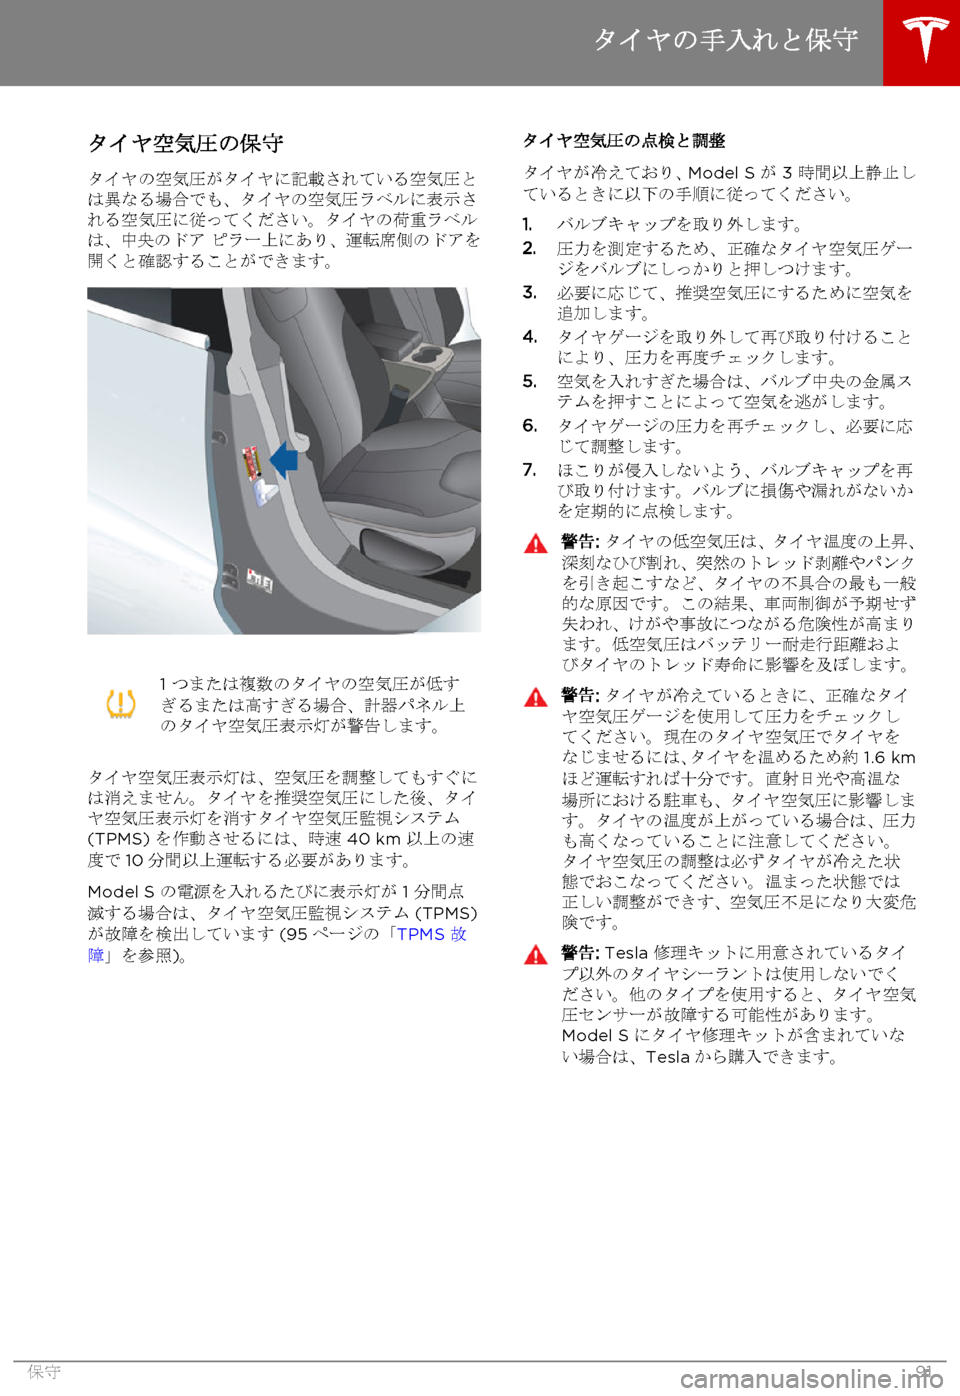 TESLA MODEL S 2015  取扱説明書 (in Japanese)  タイヤ空気圧の保守
タイヤの空気圧がタイヤに記載されている空気圧とは異なる場合でも、タイヤの空気圧ラベルに表示される空気圧に従ってくだ�